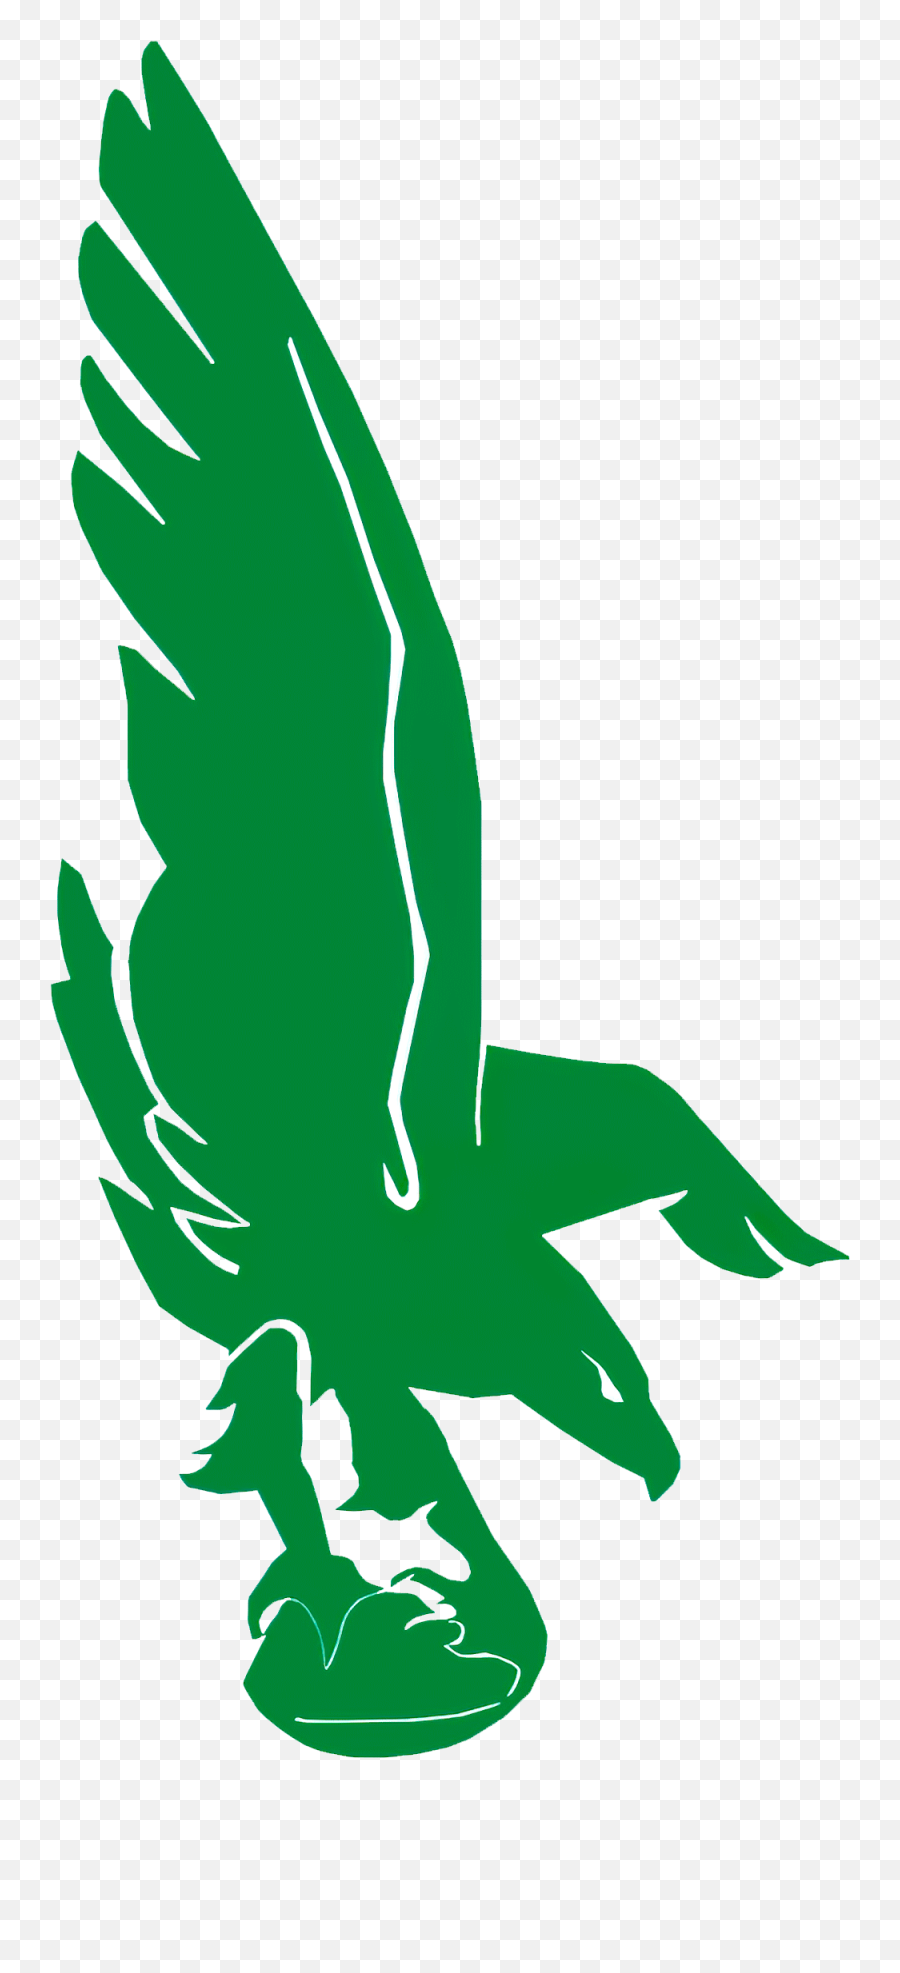 Philadelphia Eagles Logos History Team And Primary Emblem - Emblem Png,Eagles Logo Images